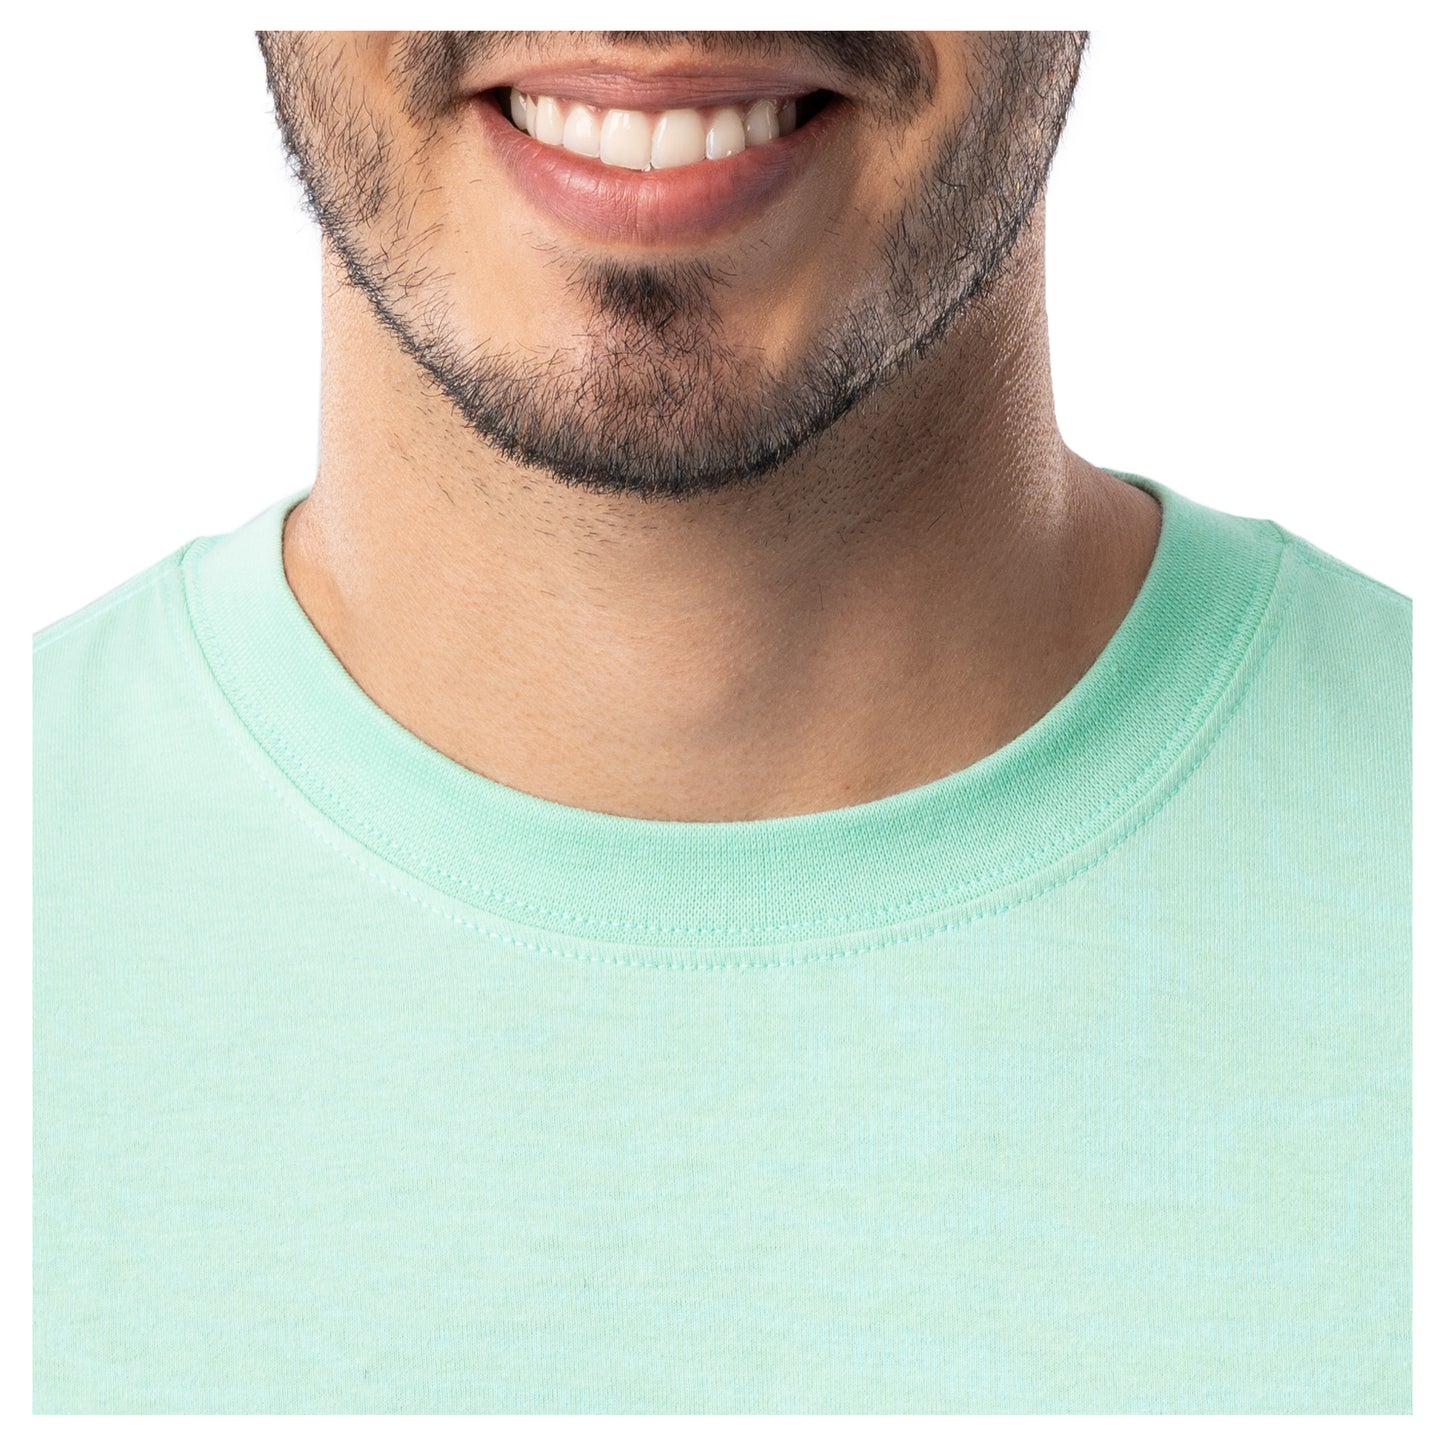 Men's Marlin Stencil Short Sleeve Pocket T-Shirt